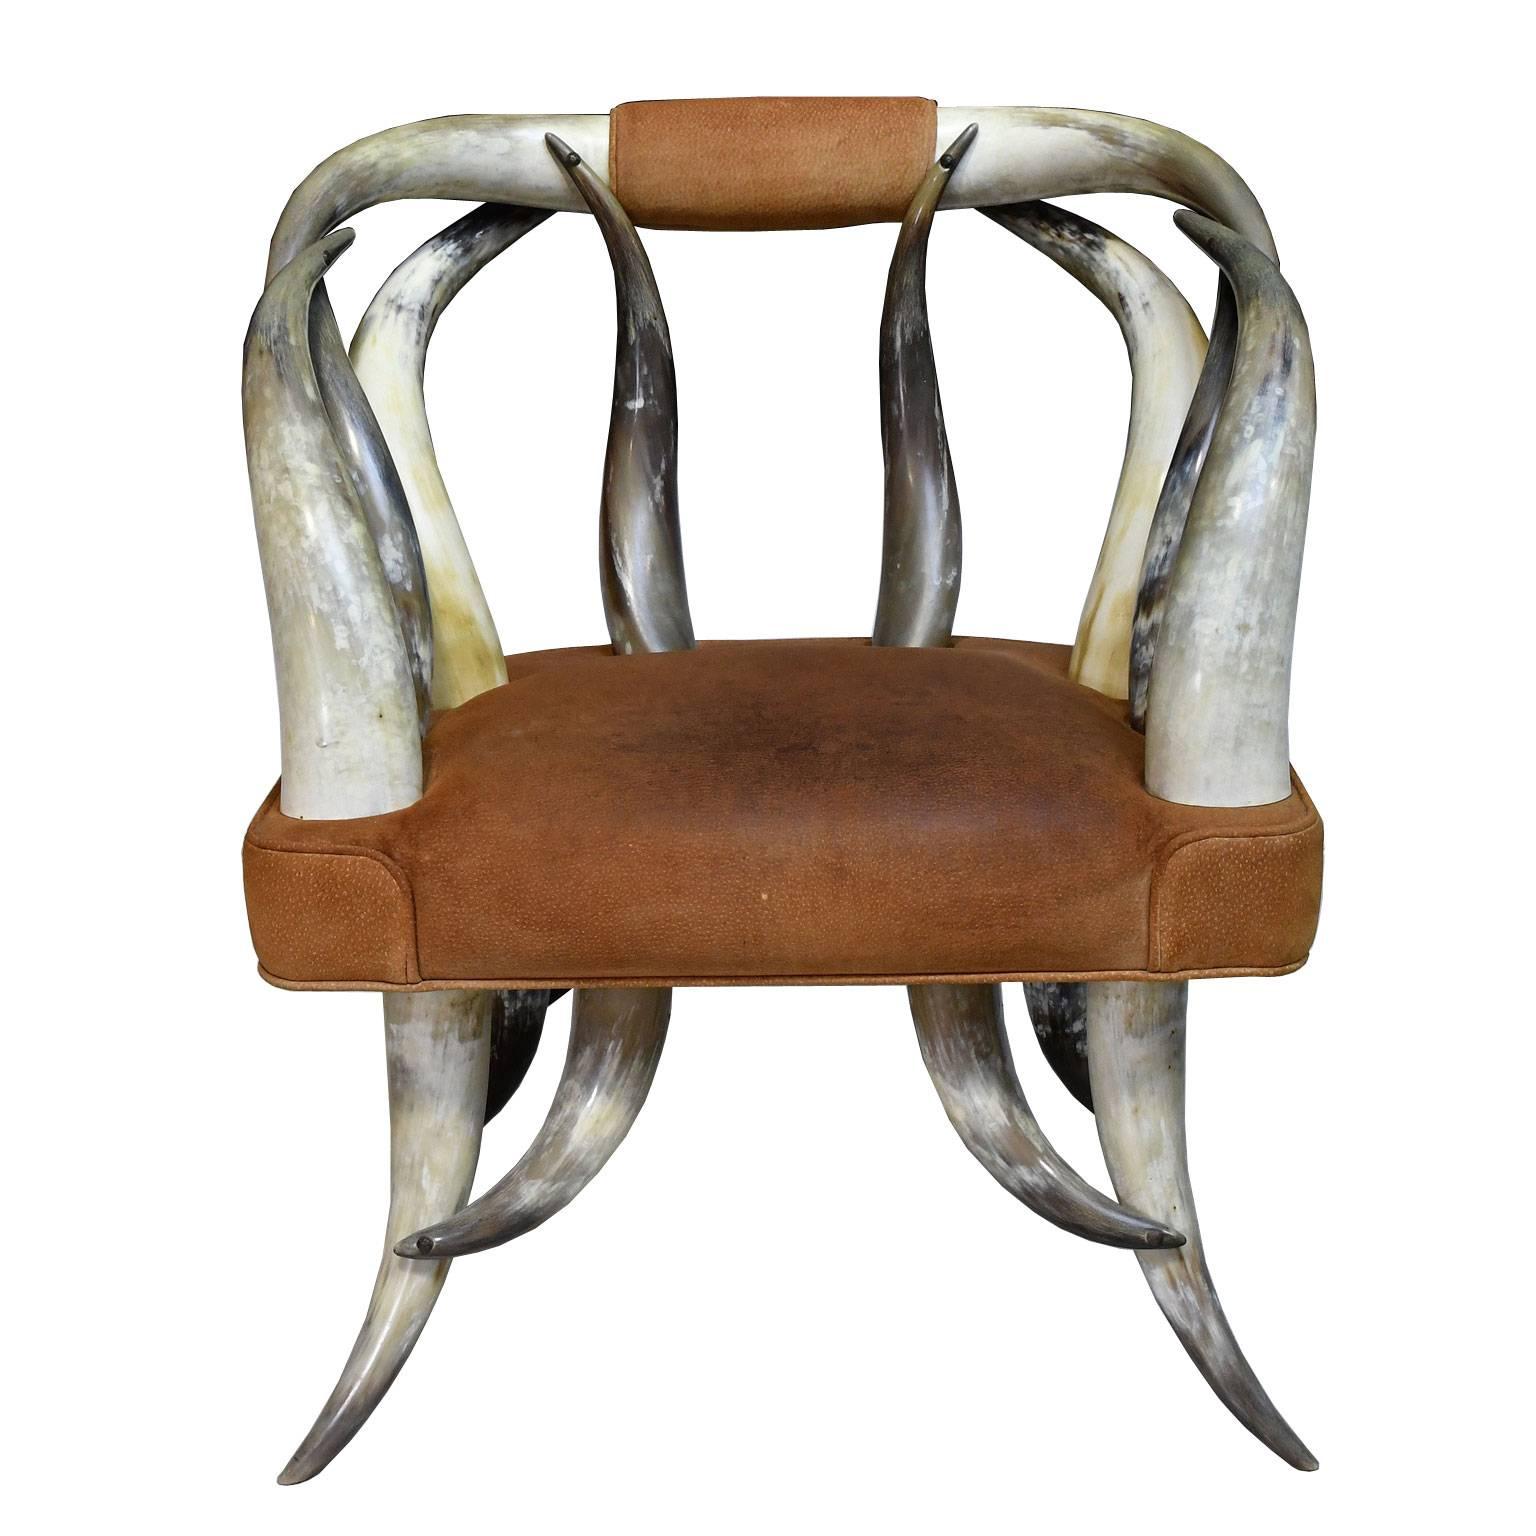 Ein fesselnder Stuhl, der aus symmetrisch angeordneten Hörnern des texanischen Langhornstiers besteht, die die Rückenlehne, die Seiten und die Beinstützen bilden, mit einem breiten Sitz, der mit originalem Leder gepolstert ist. Die Hörner wurden in